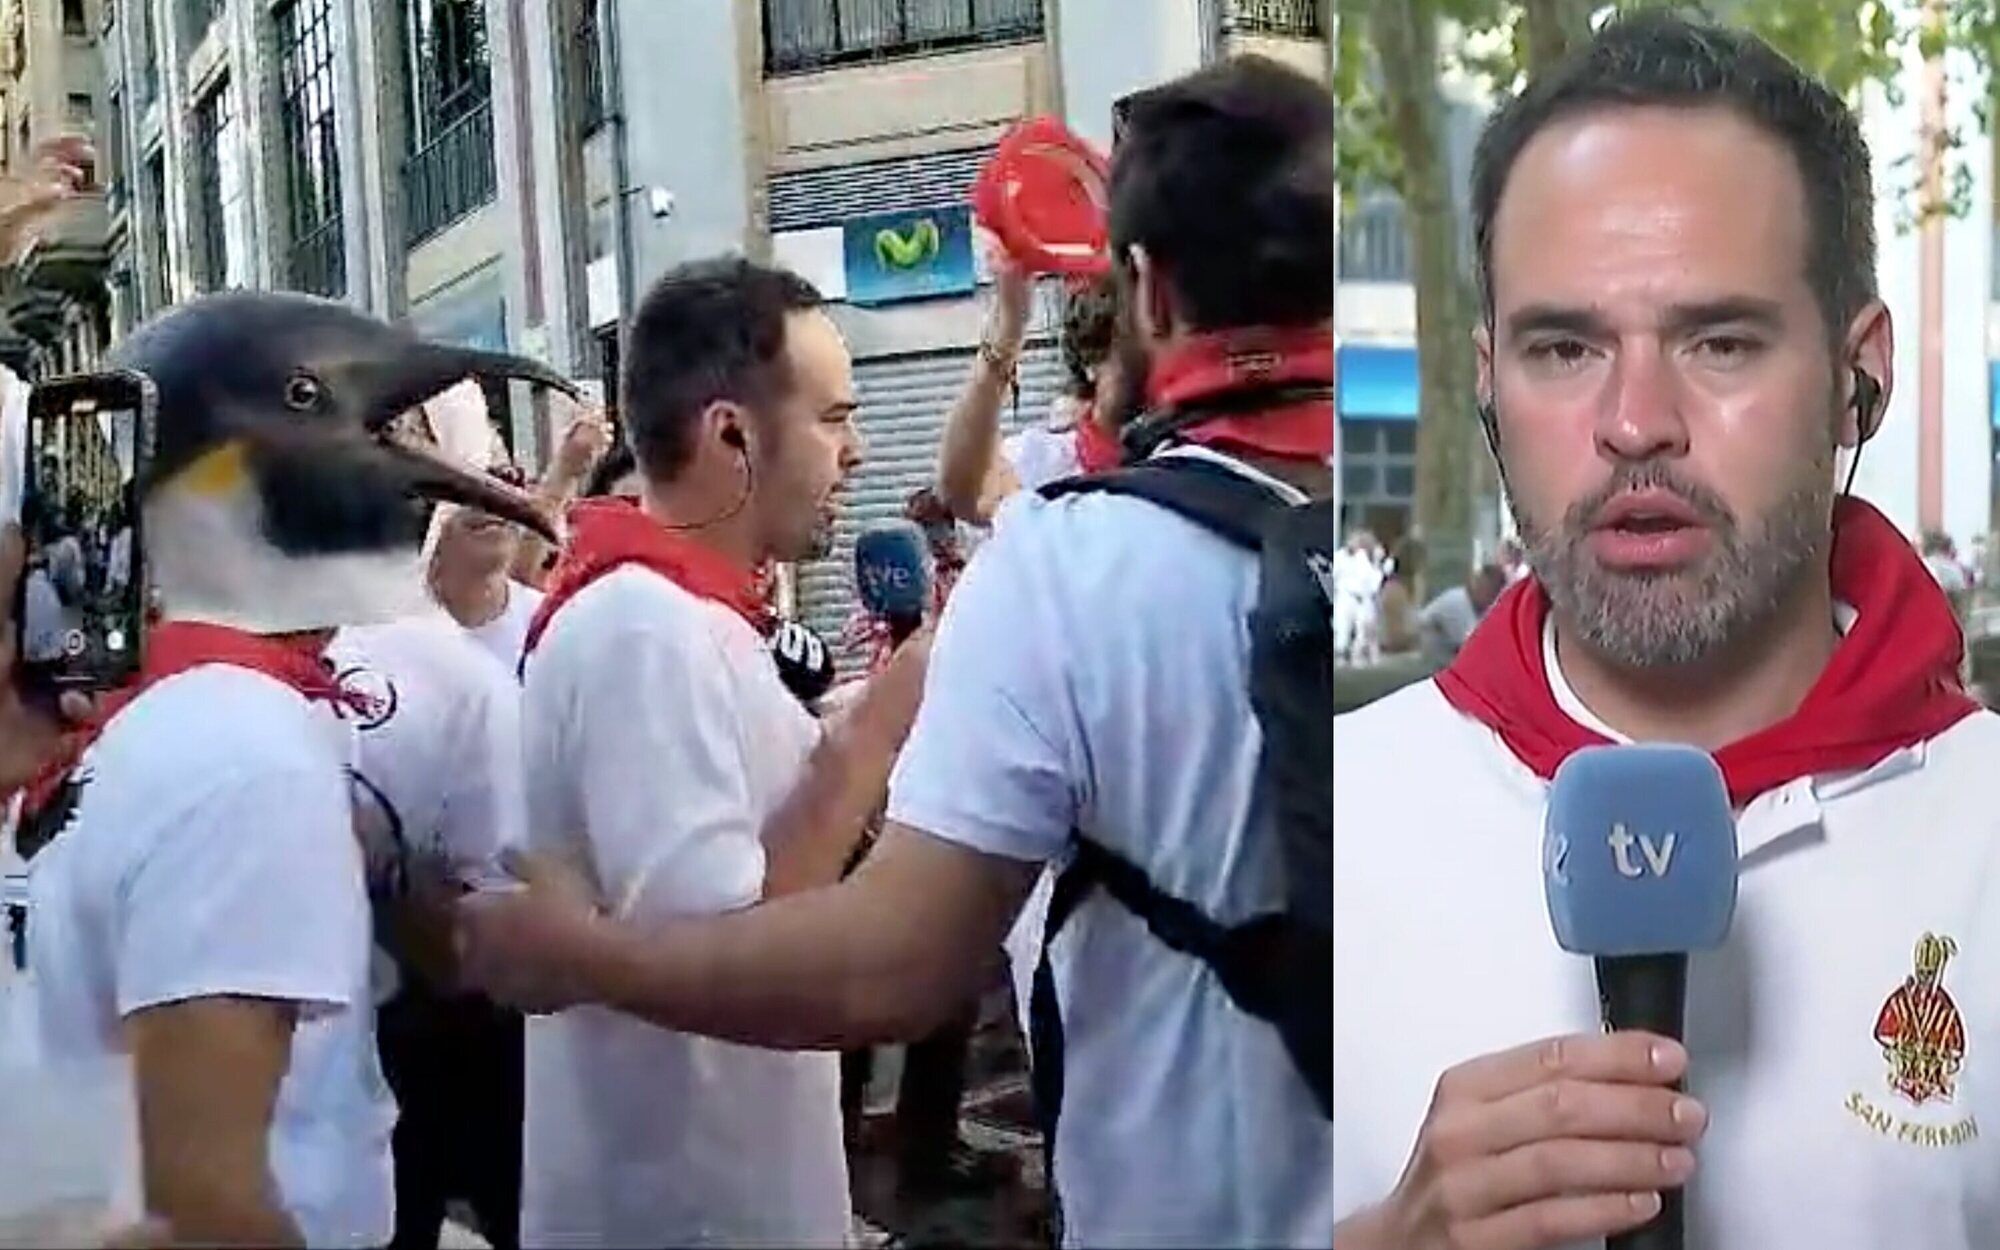 Agreden, insultan y acorralan al reportero de TVE en Sanfermines durante la conexión: "¡Que te vote Txapote!"